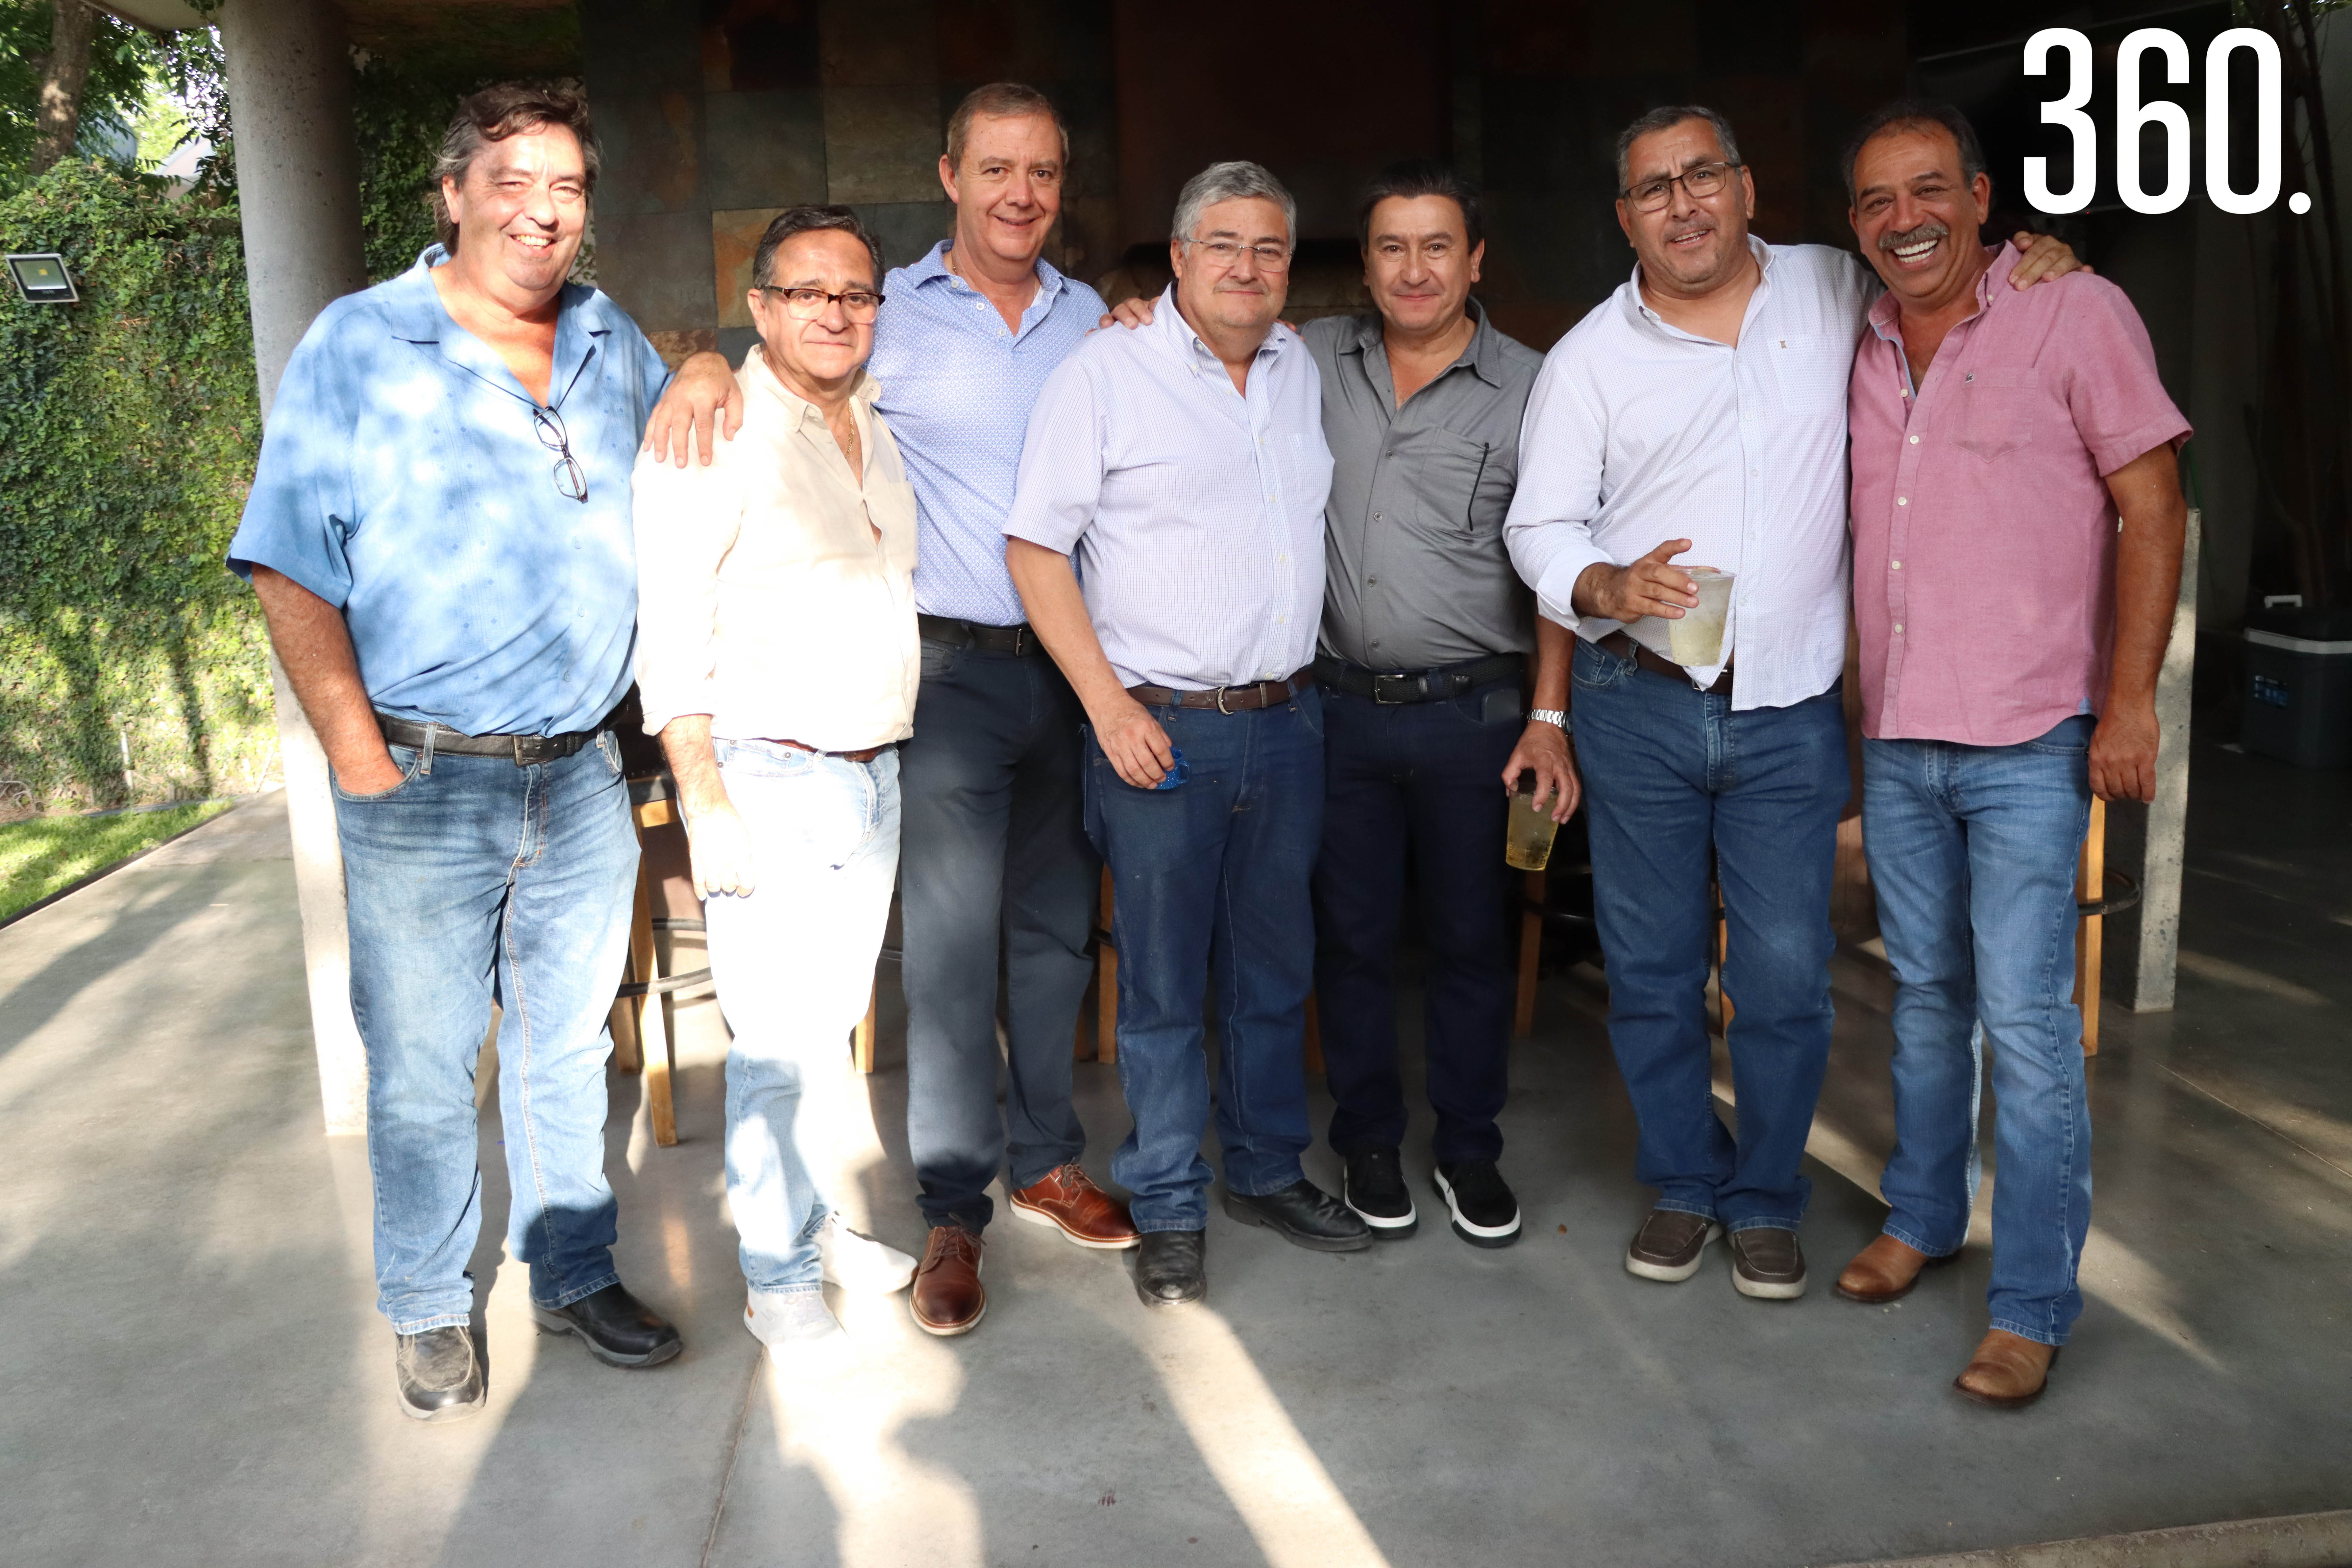 Miguel Ortiz de Montellano, Manuel Aguirre, Emilio Rodríguez, Ignacio Rodríguez, Carlos Valdés, Juan Carlos Martínez y Rodrigo del Bosque.